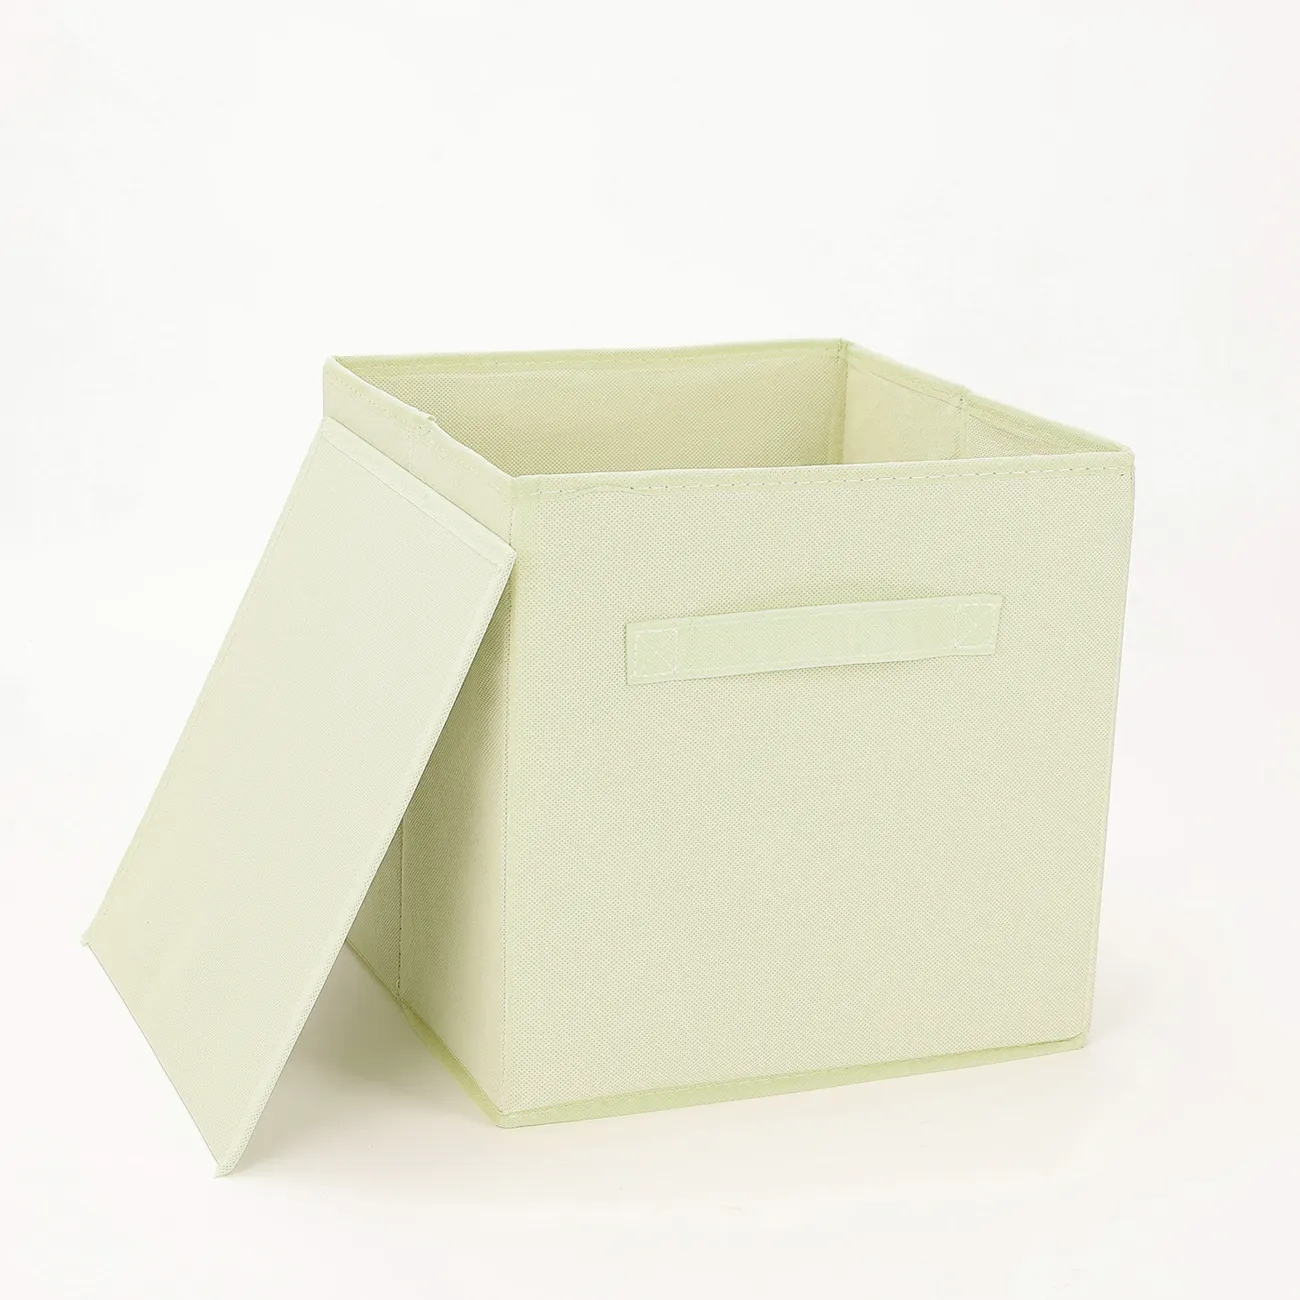 Caja de almacenamiento para estantes, paquete de 6 canastas pequeñas de  tela para organizar, cubos de almacenamiento plegables con asas para  armario